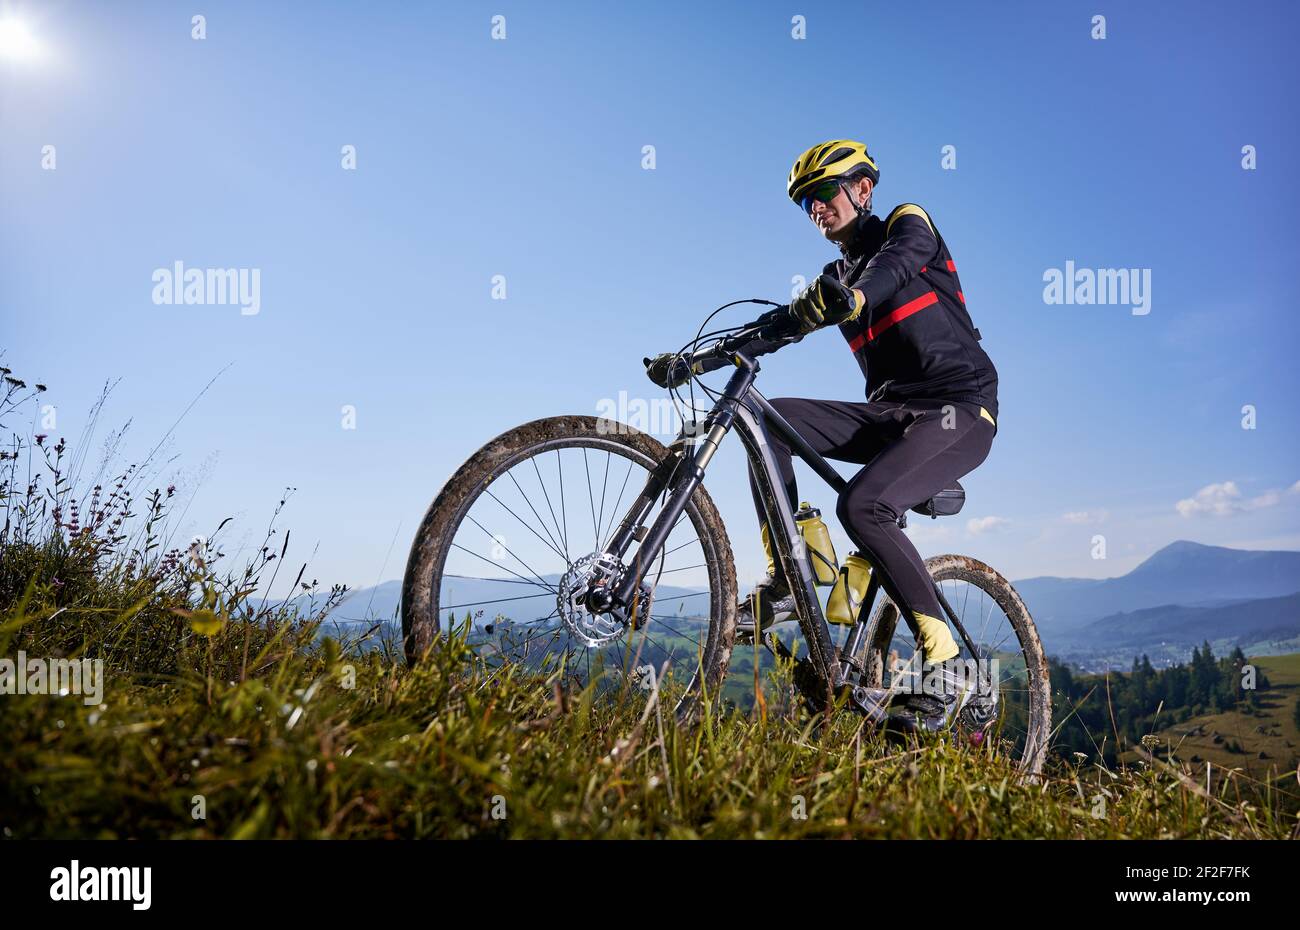 Fröhlicher Radler, der unter blauem Himmel Fahrrad bergauf fährt  Stockfotografie - Alamy